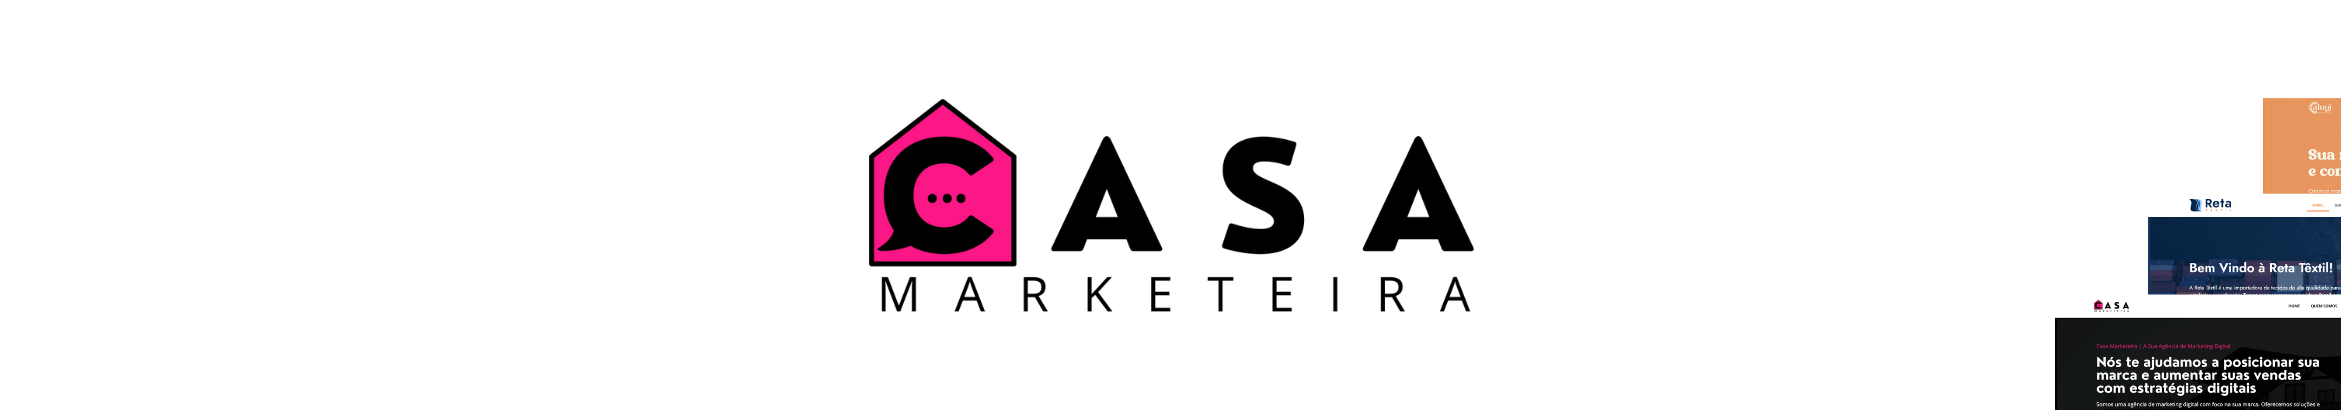 Casa Marketeira's profile banner